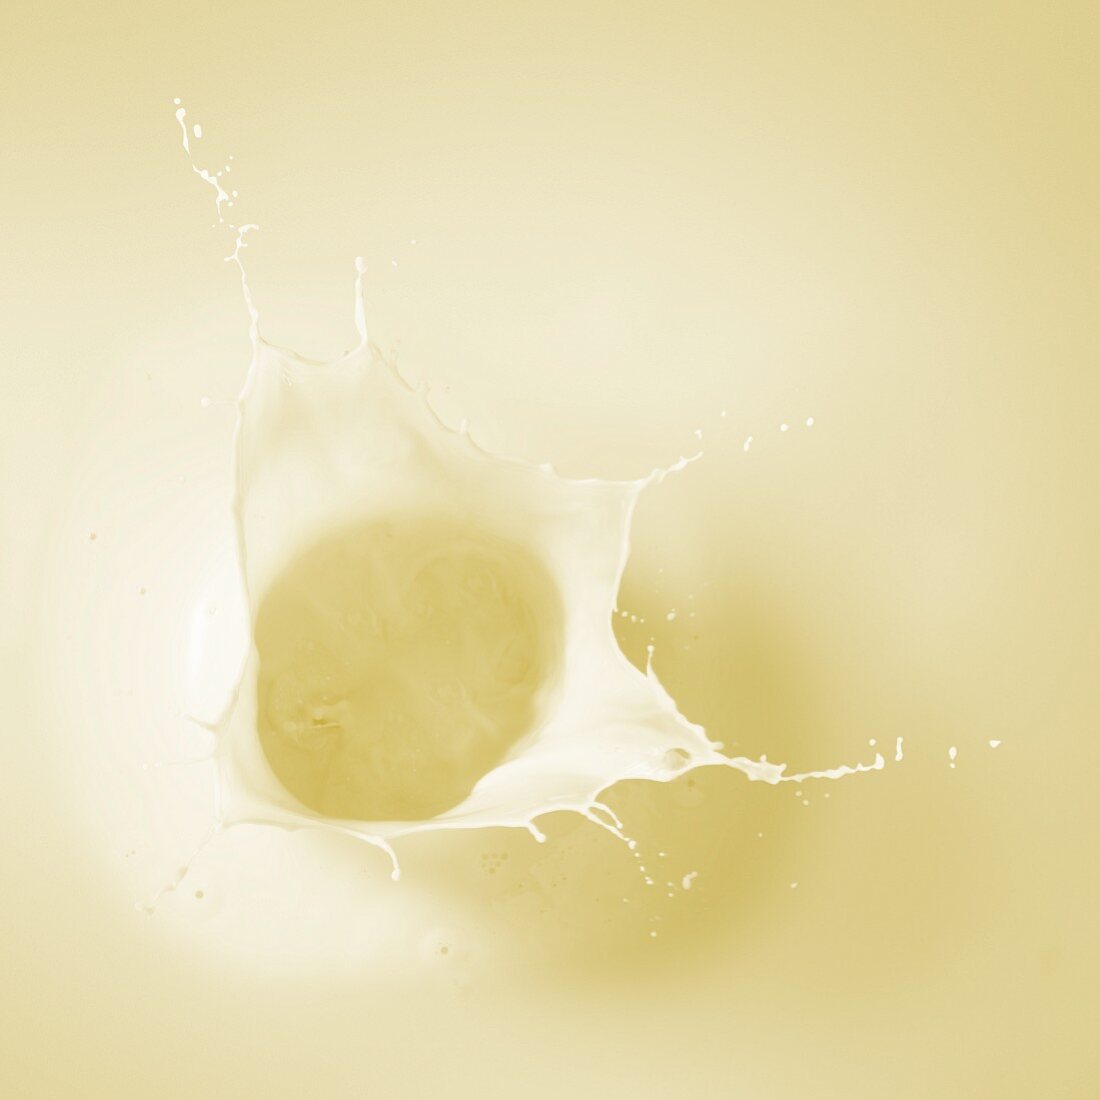 Bananenmilch mit Splash (Close Up)